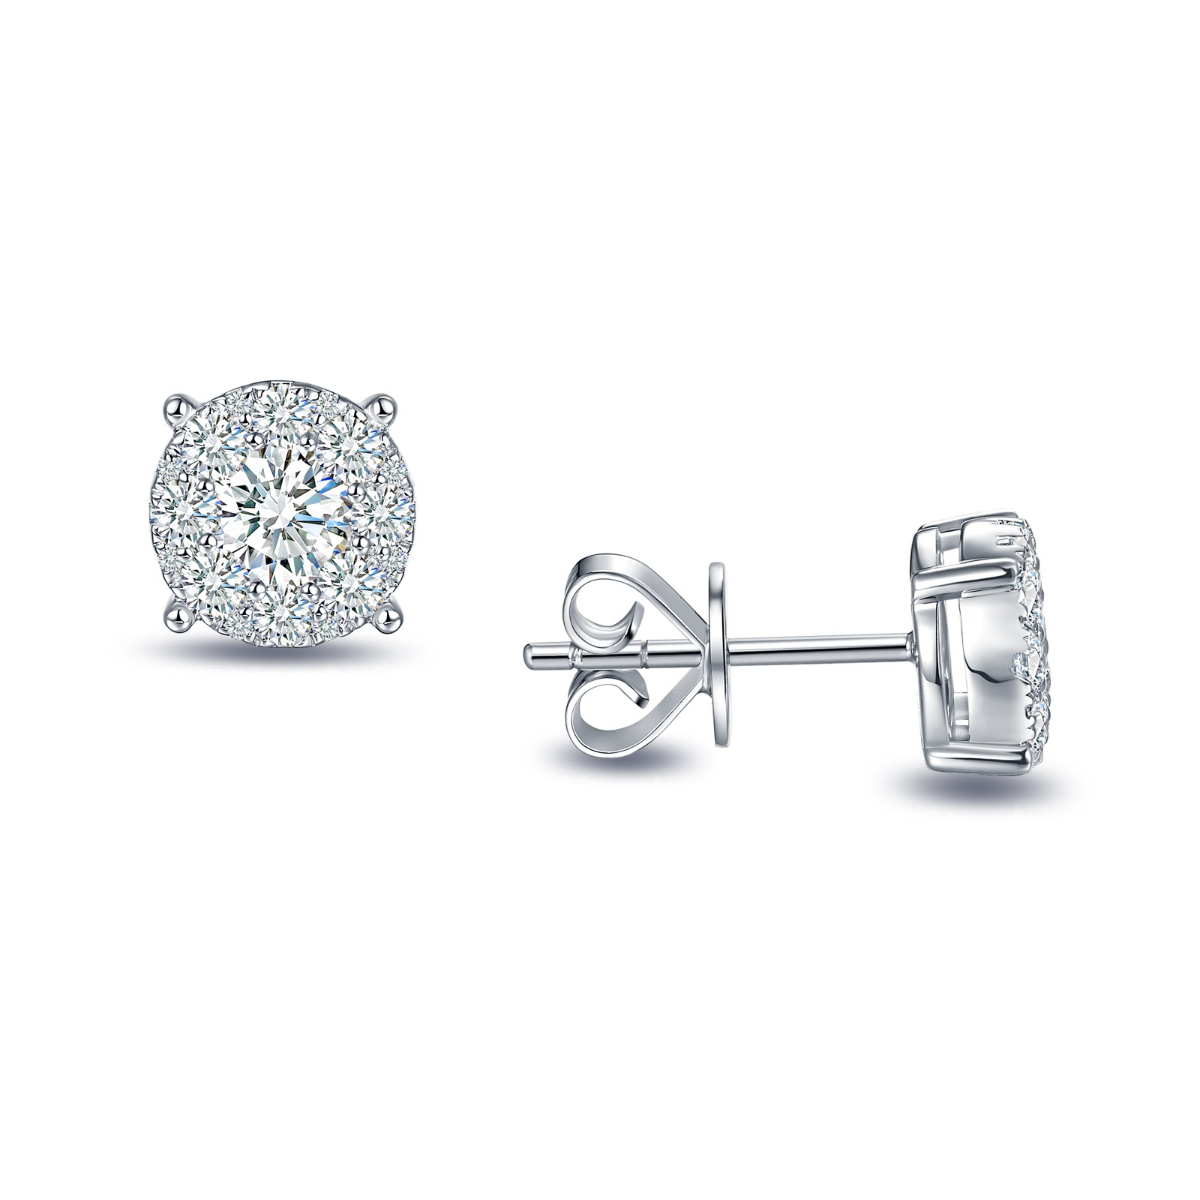 E35488WHT – 18K White Gold Diamond Earring, 1.07 TCW Style No: E35488WHT